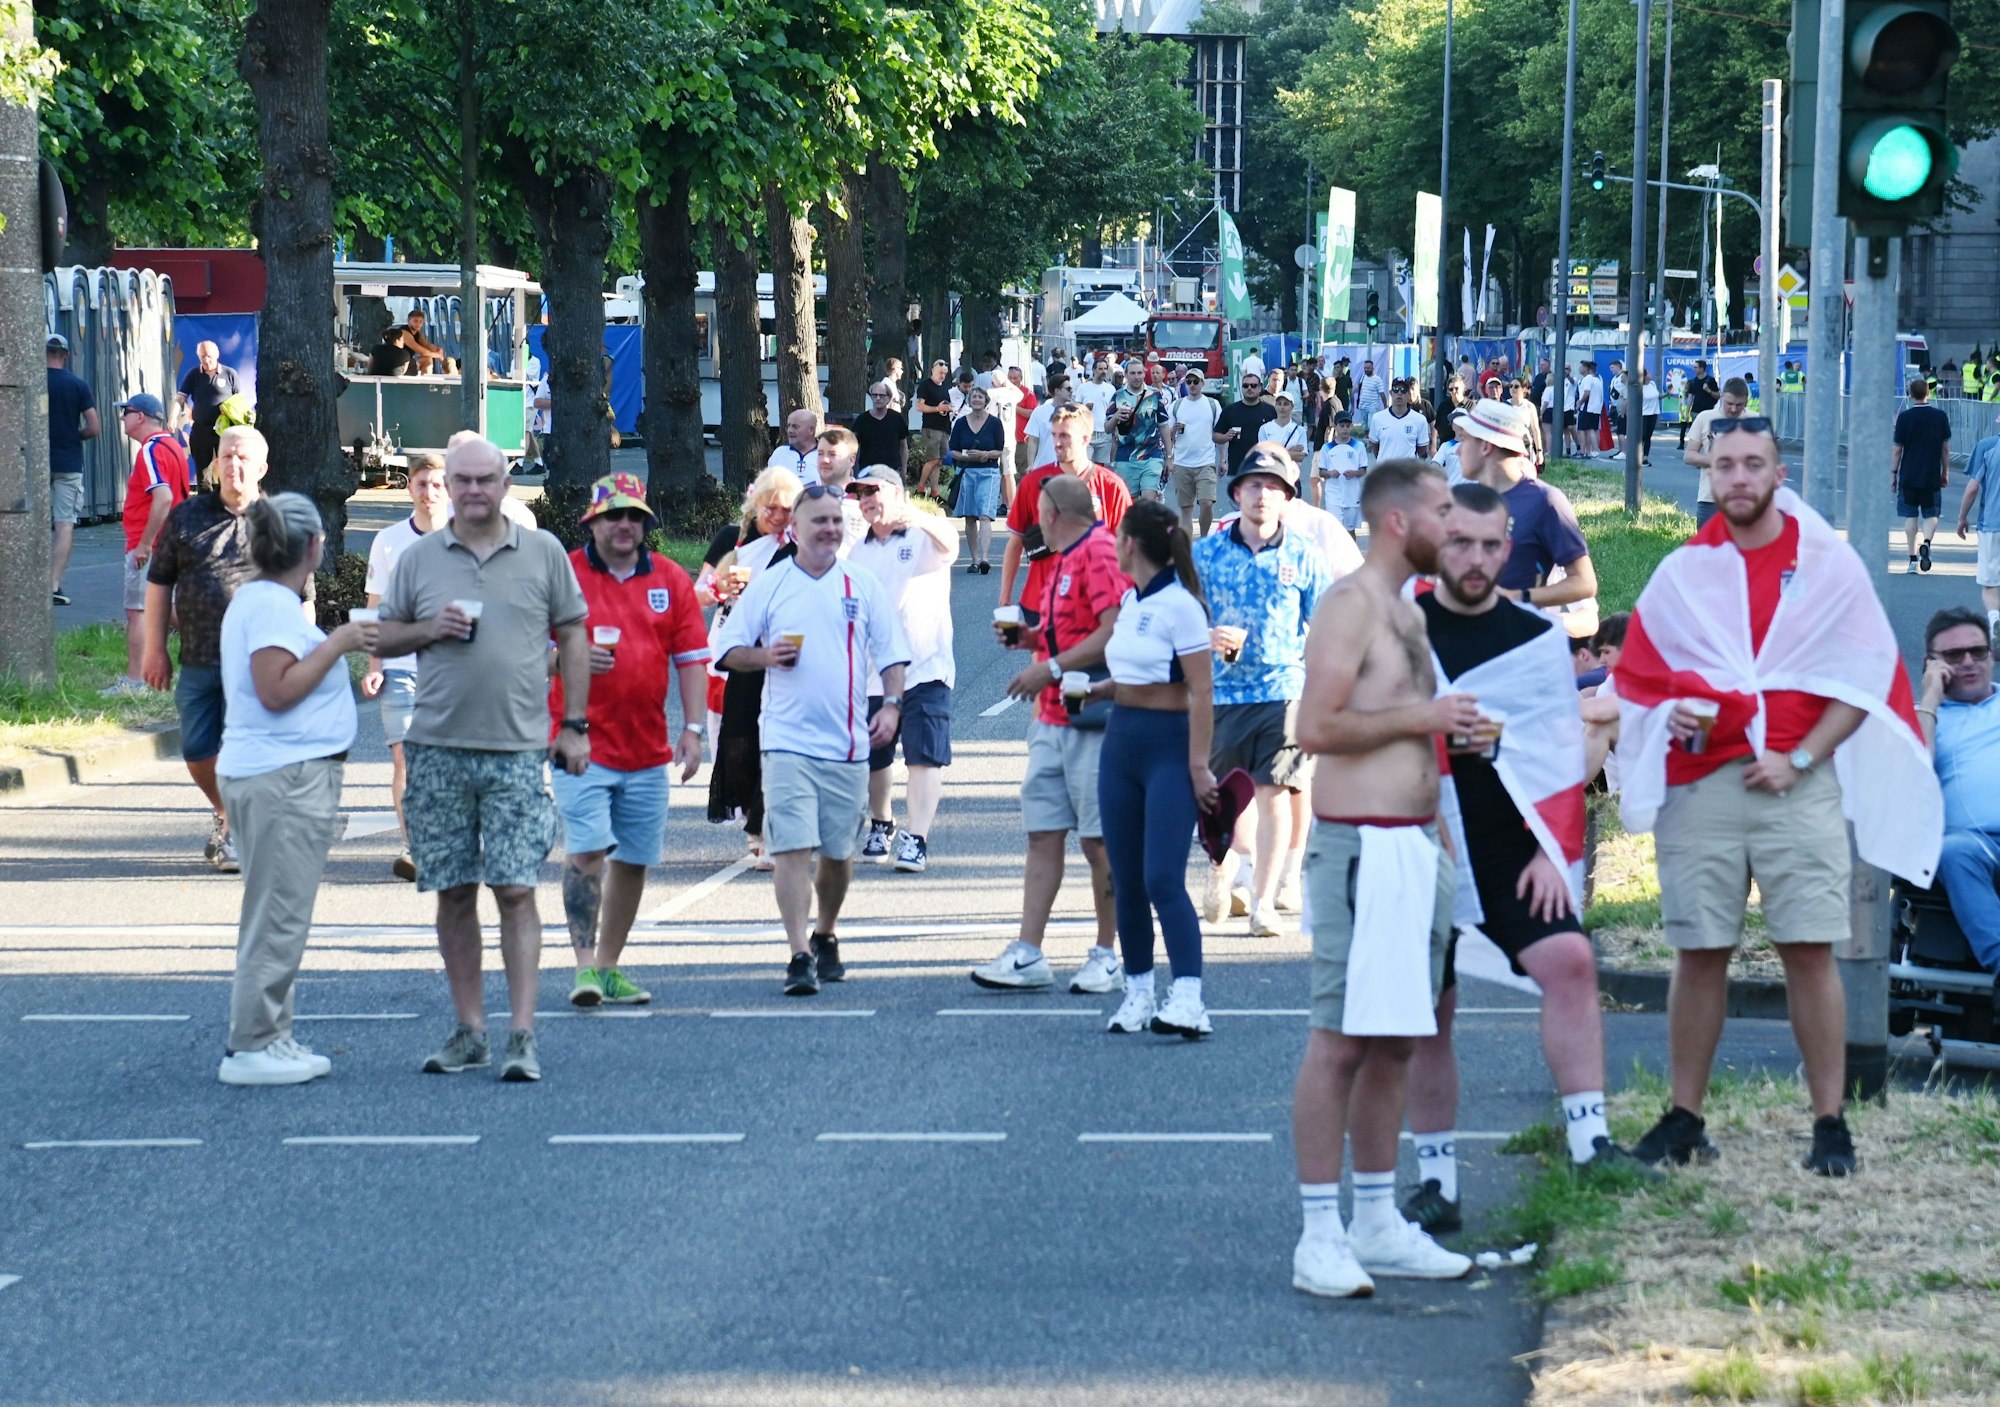 Foto von englischen Fußball-Fans am Konrad-Adenauer-Ufer in Köln.